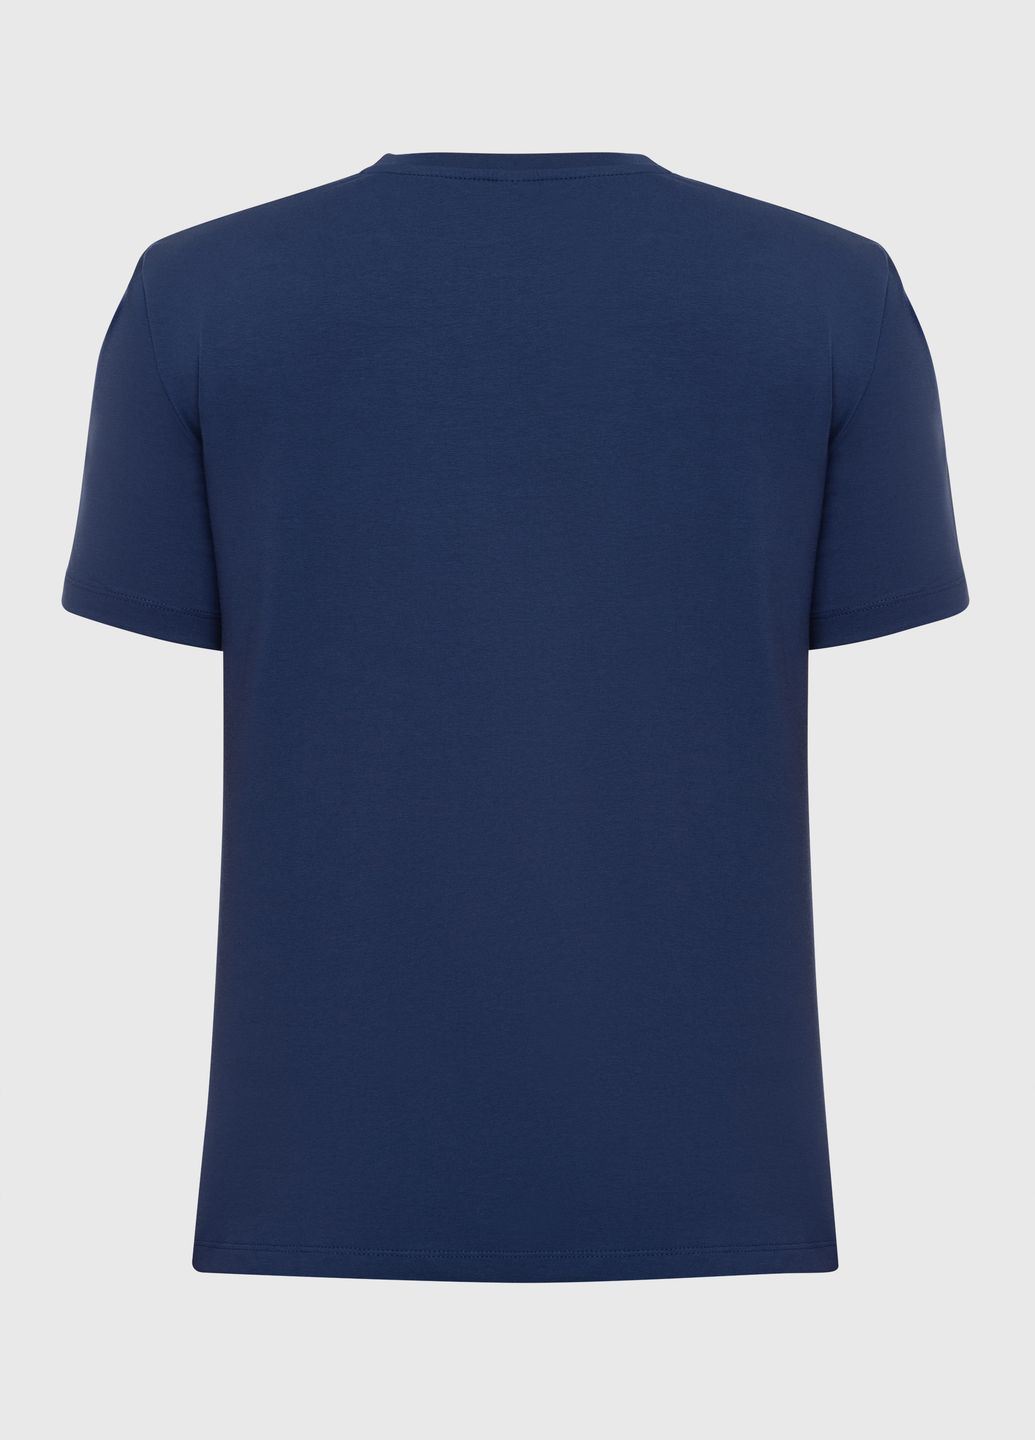 Синяя футболка мужская базовая, электрик German Volf